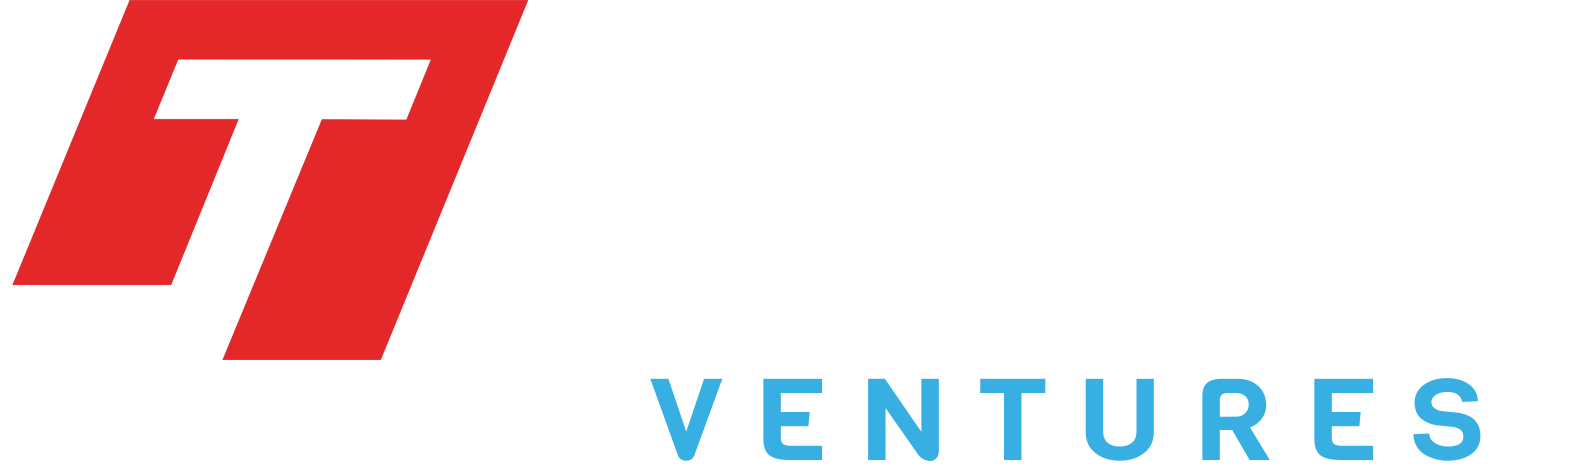 Teleaus Ventures